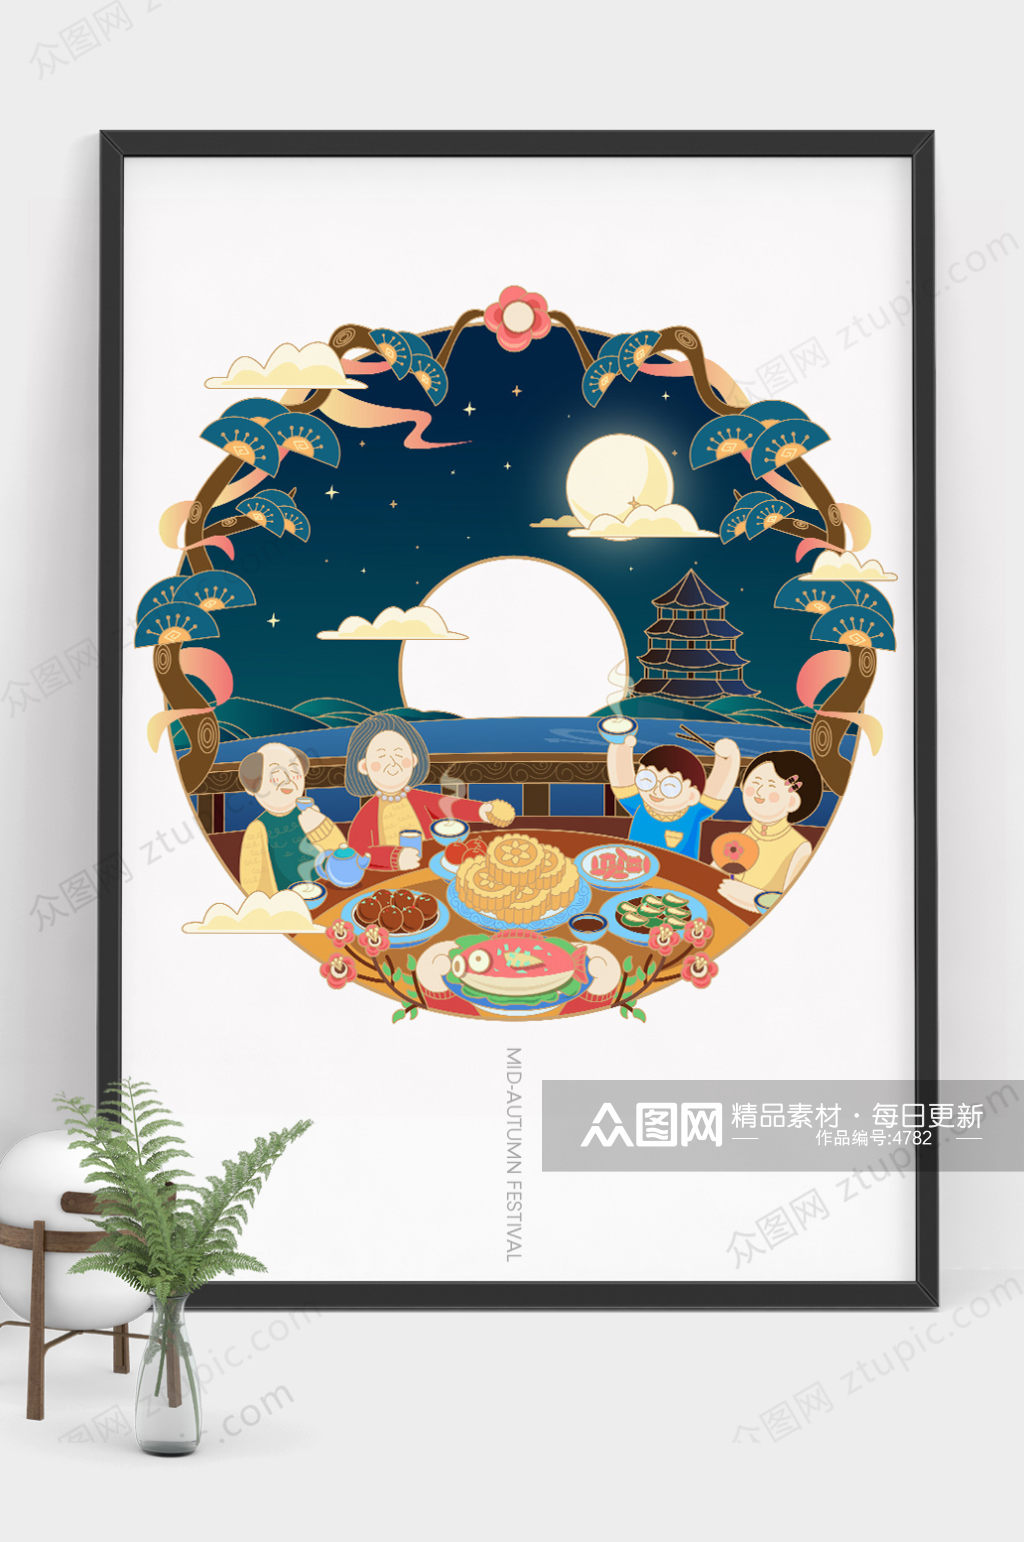 原创大气中秋节团圆饭商业插画设计素材